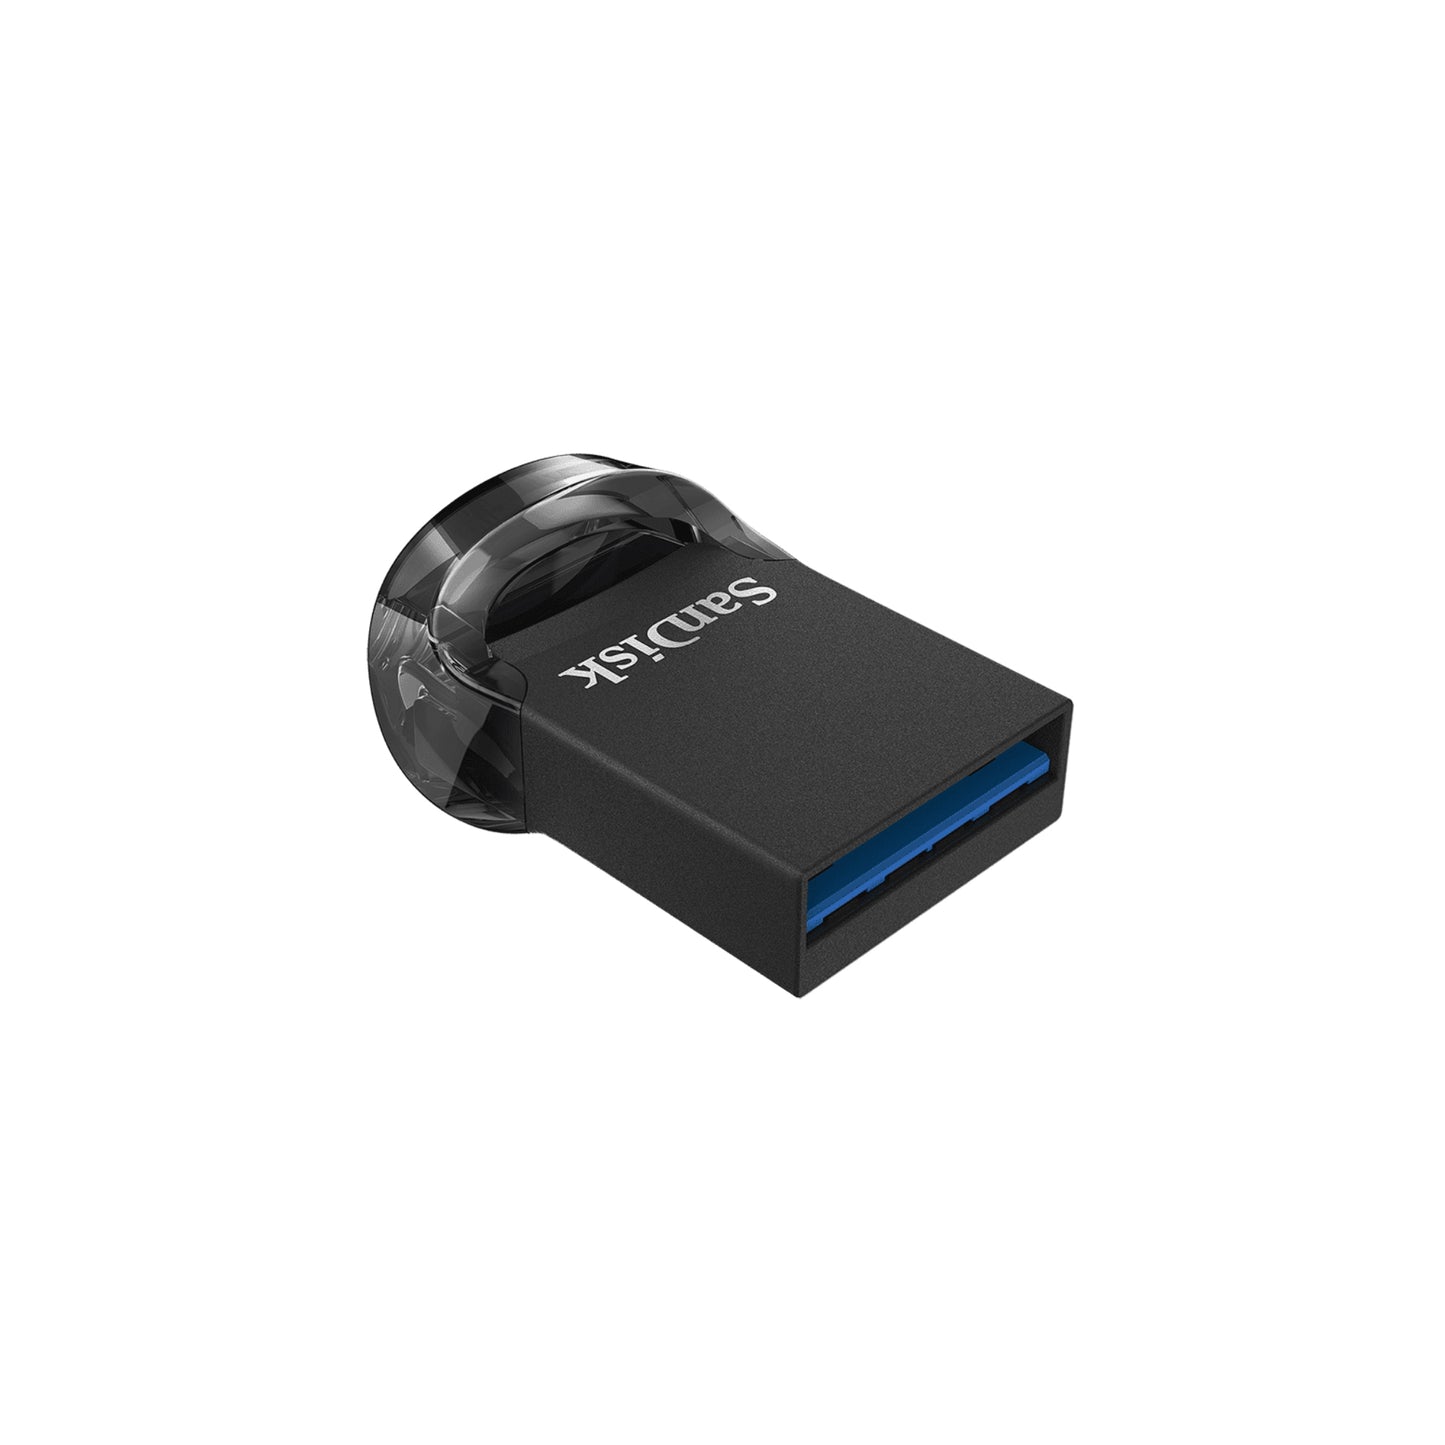 SANDISK Ultra Fit USB 3.1 16GB - Black